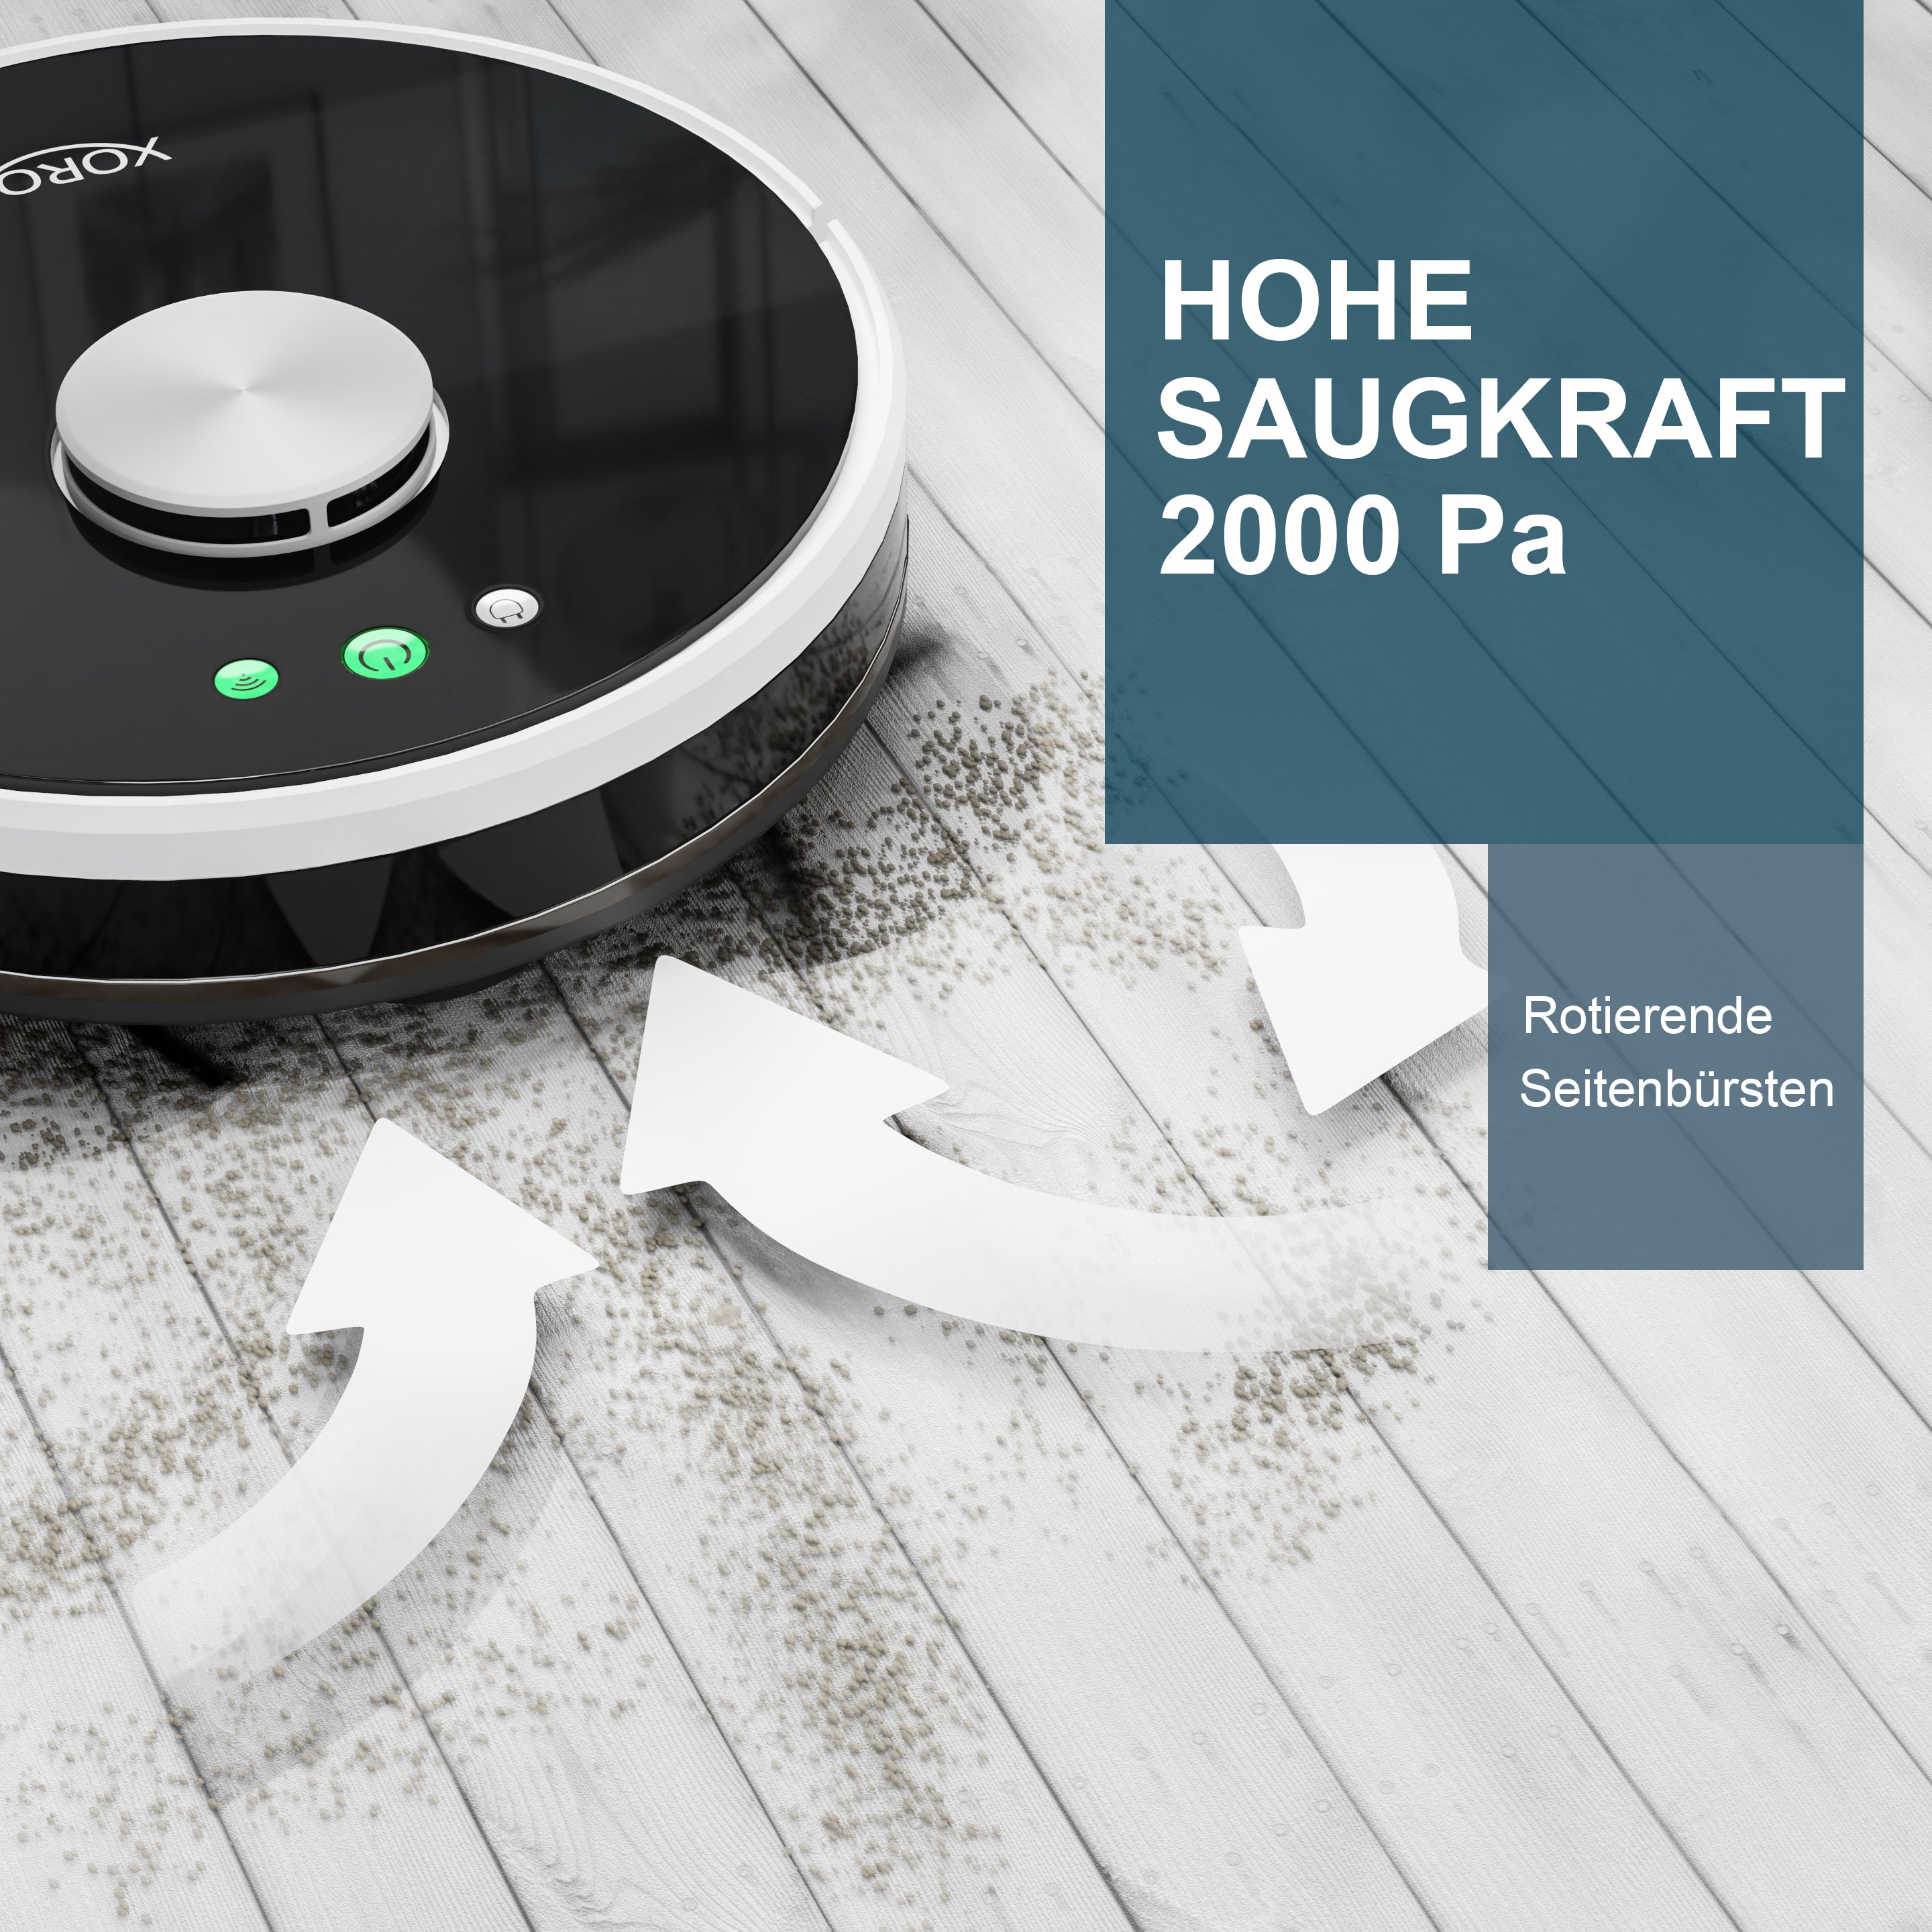 XORO Leistungsstarker Saugroboter HSR 200 mit Wischfunktion, Lasernavigation, Alexa/Google Home, Echtzeit Mapping, Staubsauger-Roboter ideal für Tierhaare